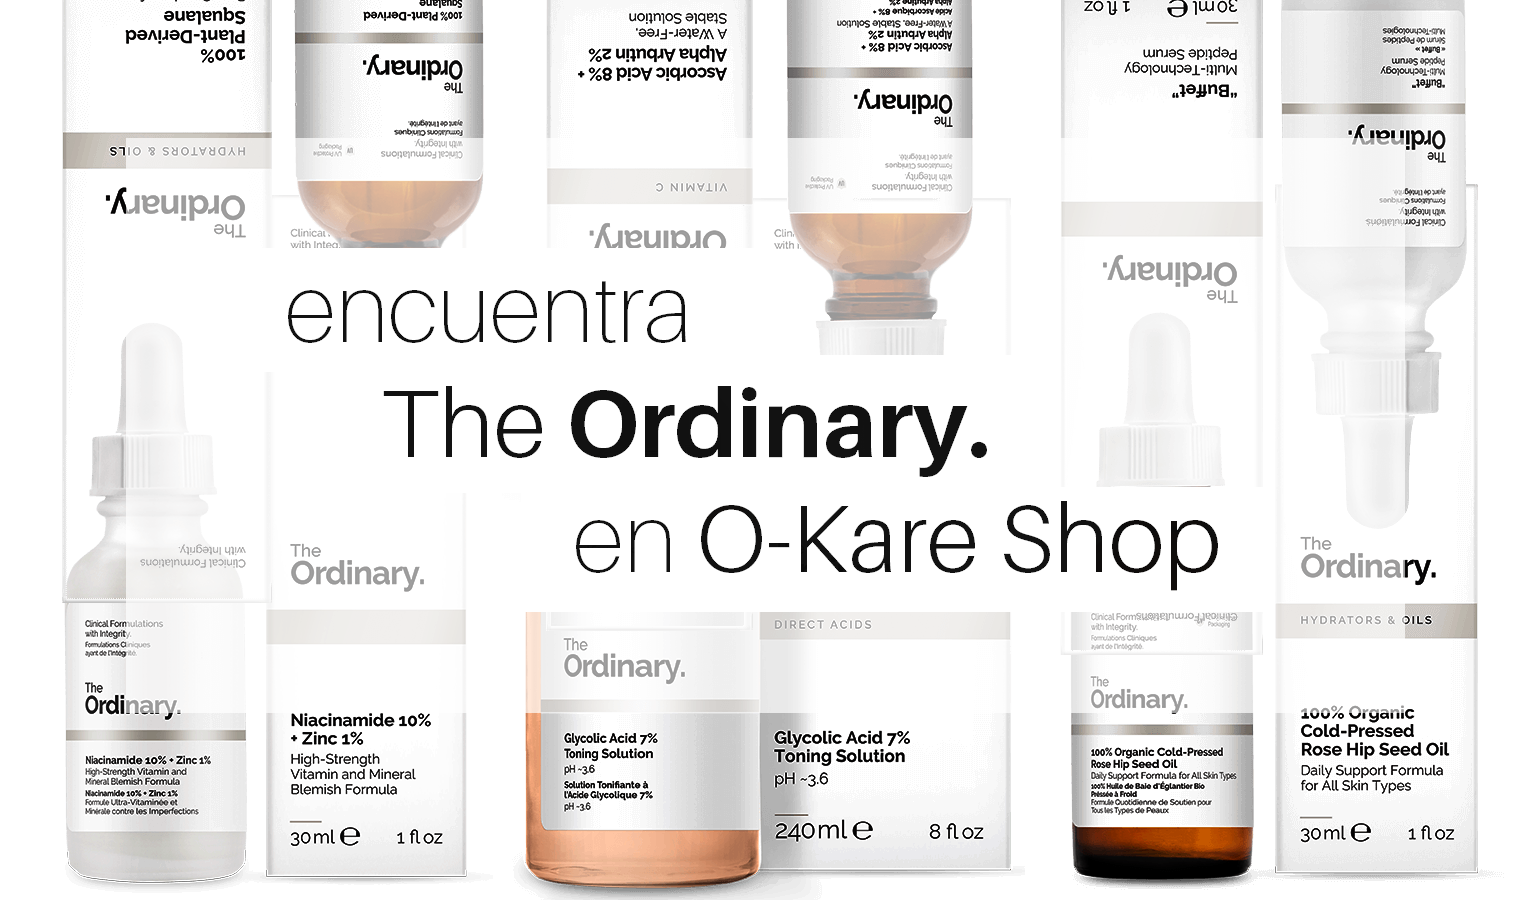 The Ordinary ha llegado a O-Kare Shop!